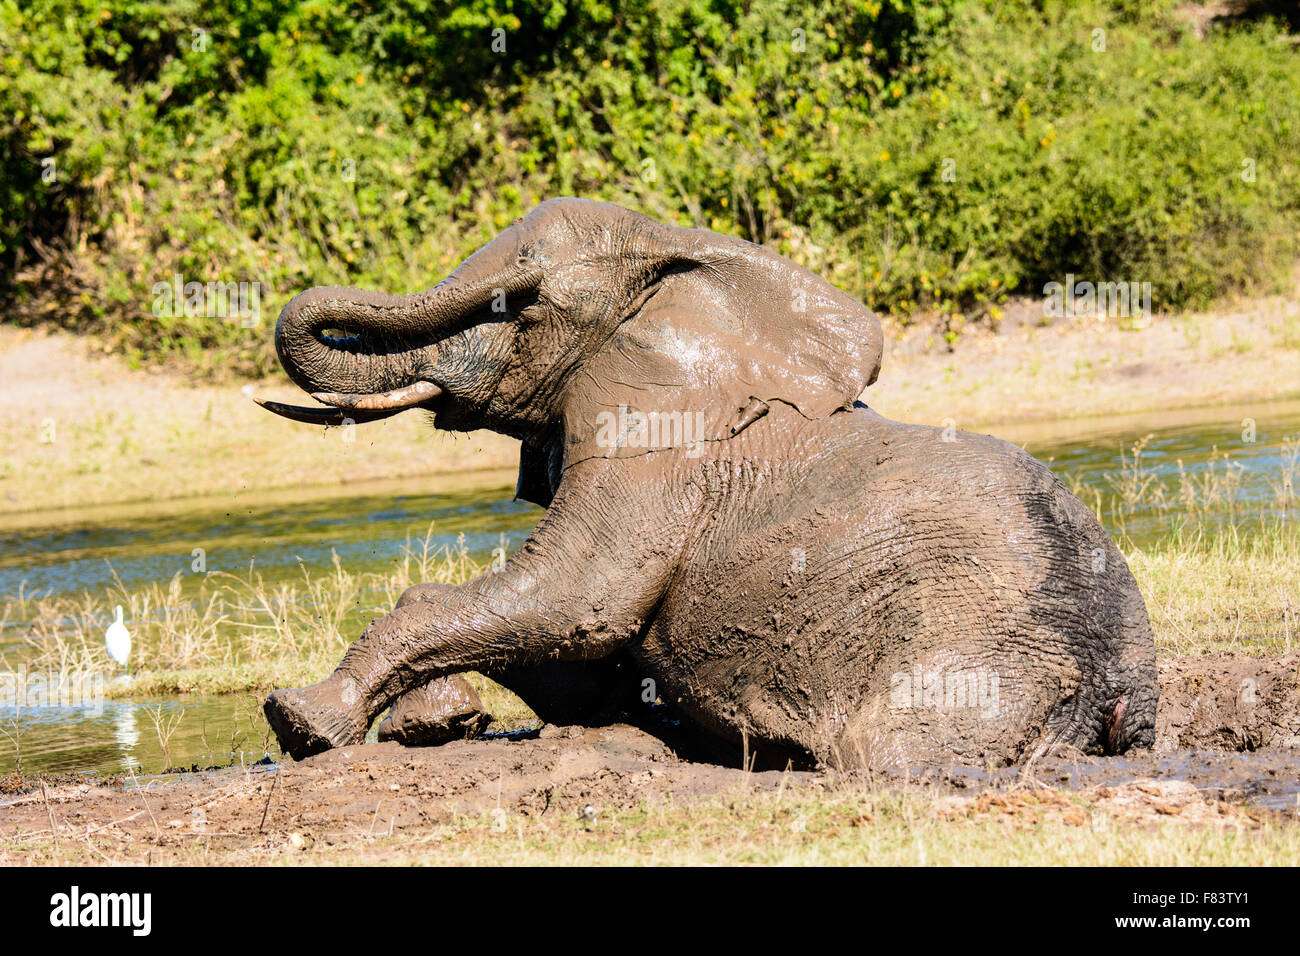 Elephant desbarre desde su ojo después de un baño de barro Foto de stock